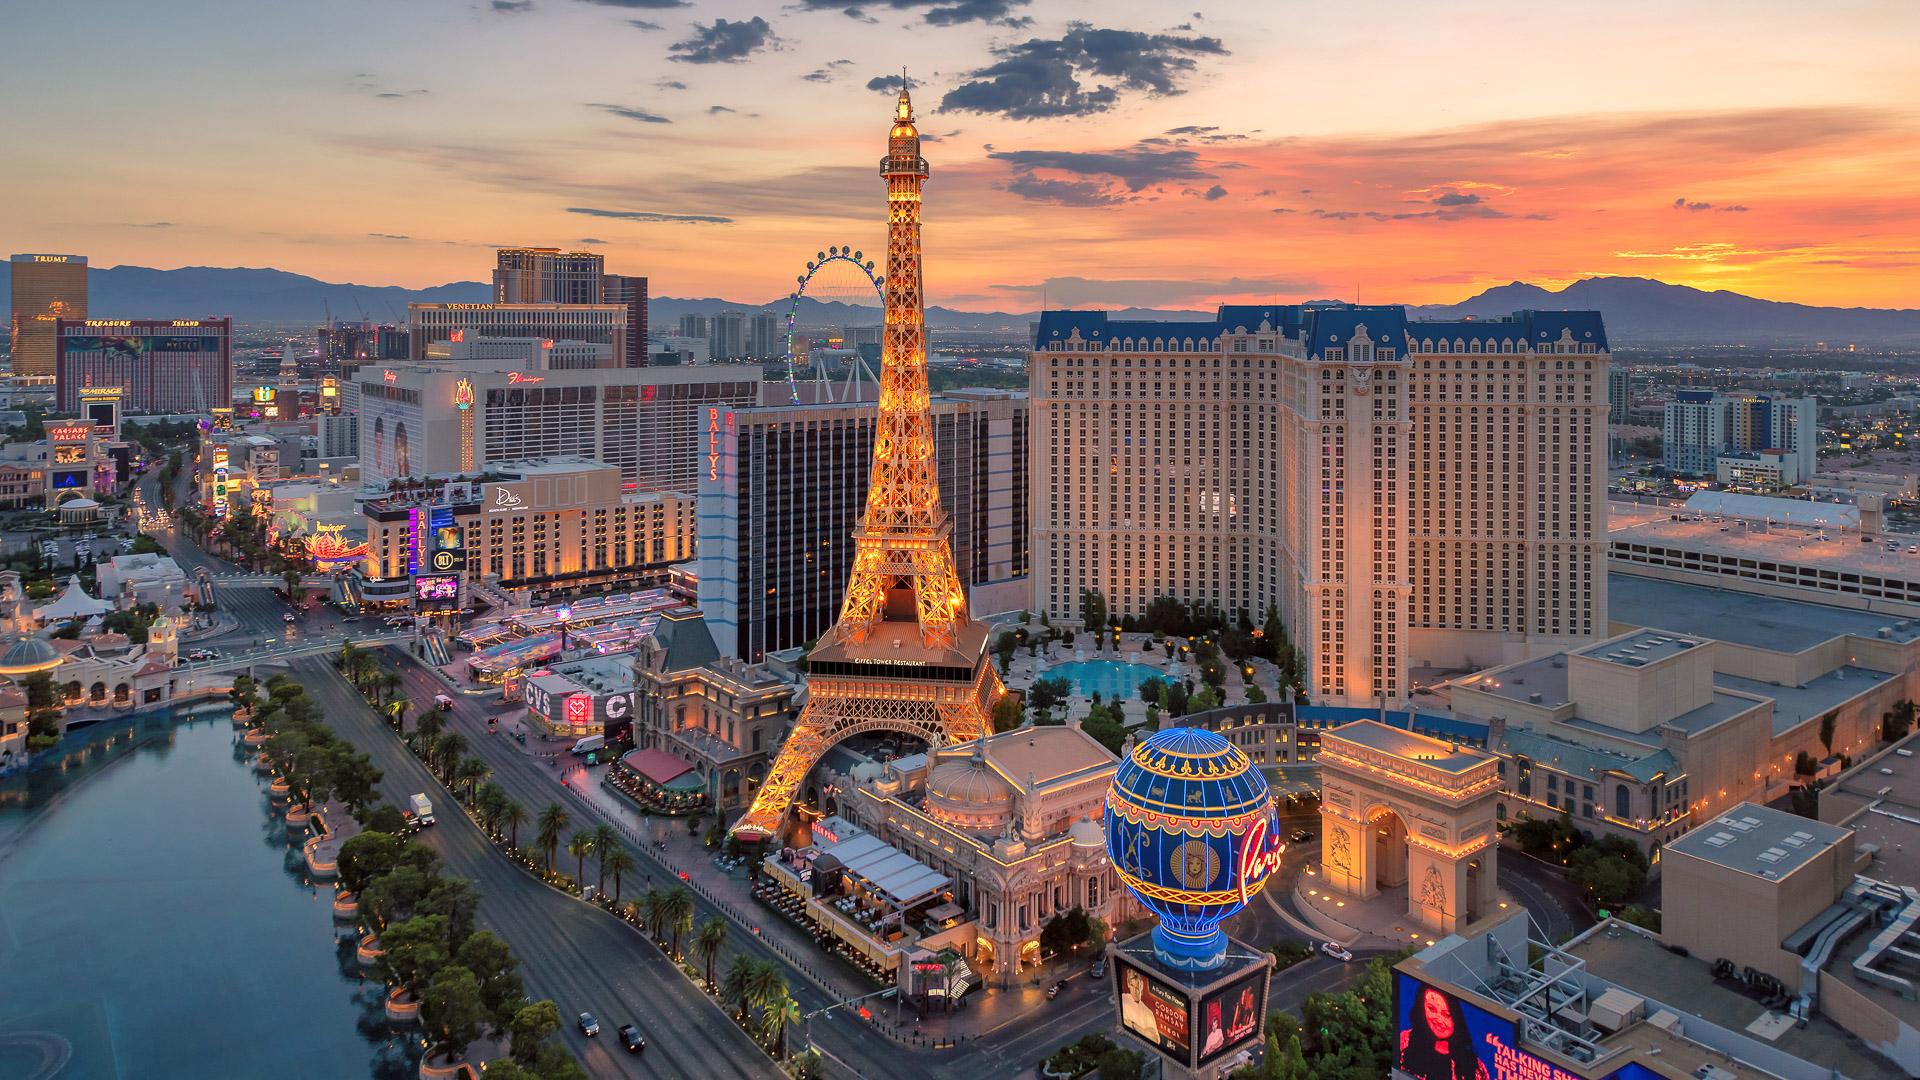 Aerial view of Las Vegas strip at sunrise on July 24, 2018 in Las Vegas, Nevada.